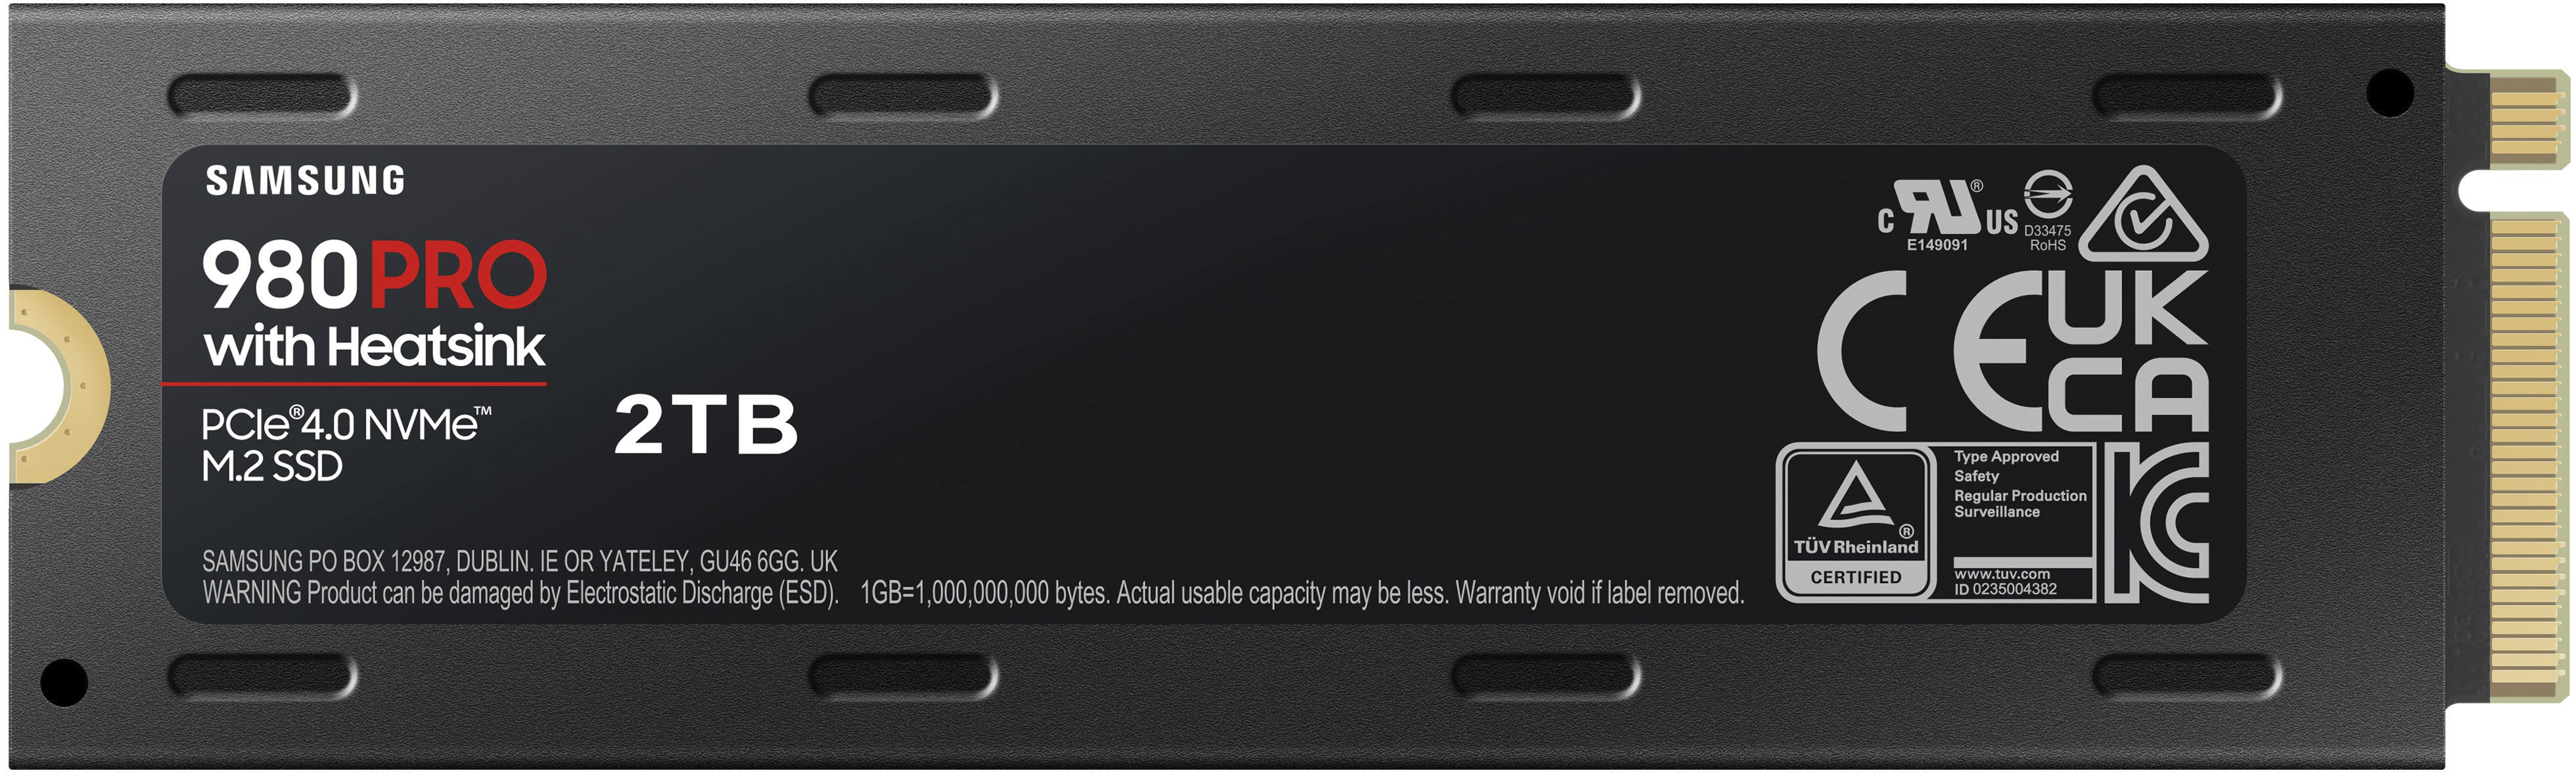 Samsung 980 PRO Heatsink MZ-V8P2T0CW 4 PCIe for Gen 2TB Best - x4 Internal SSD PS5 NVMe Buy